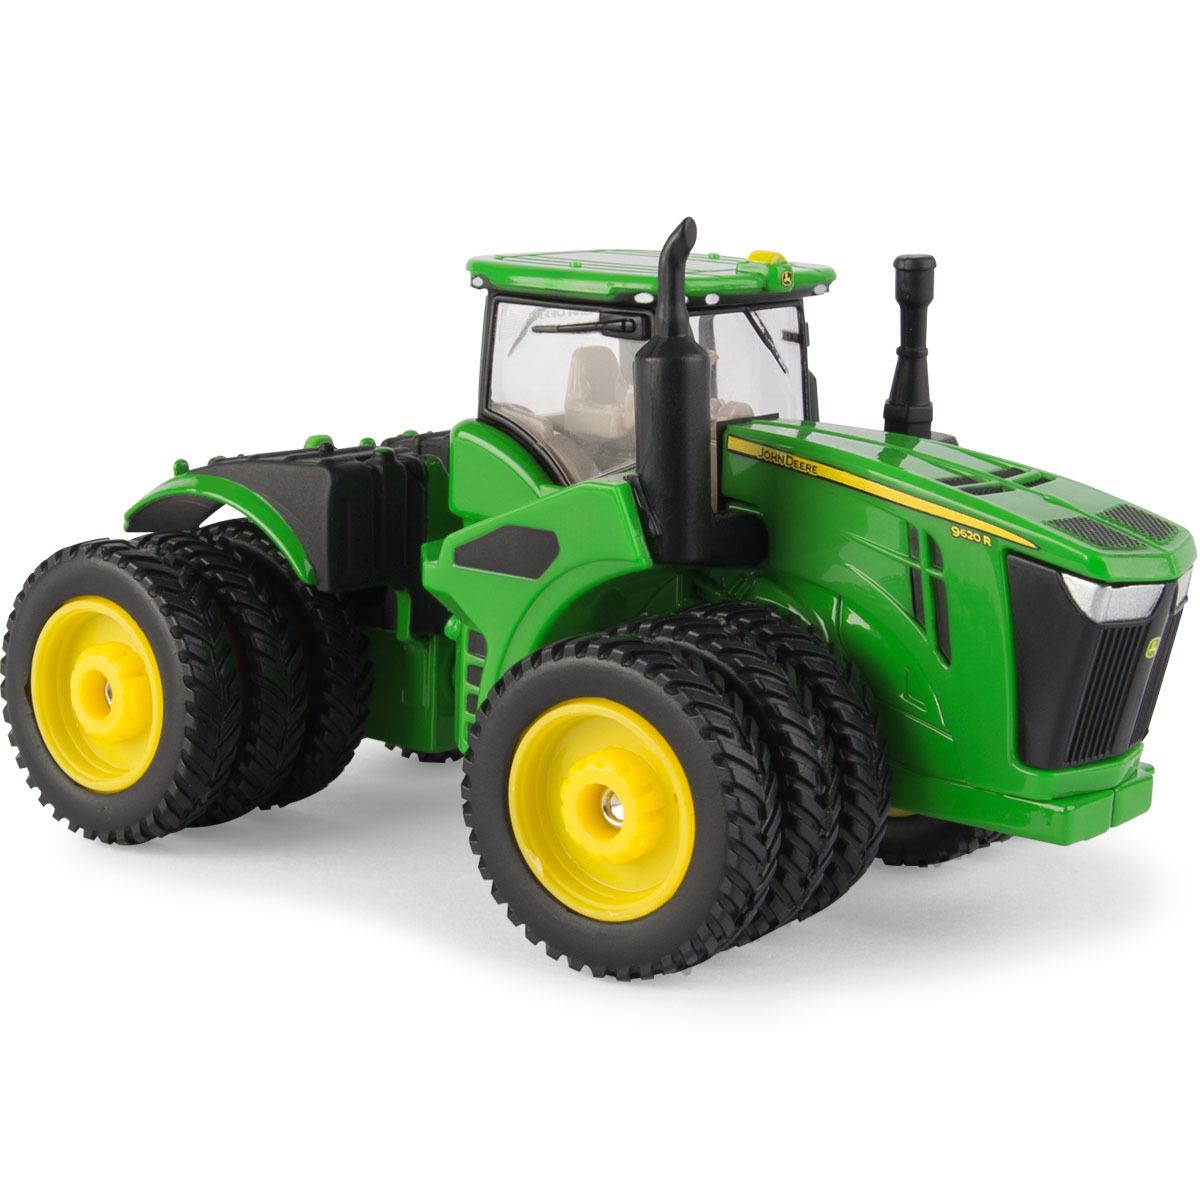 1/64 Scale 9620R Tractor - Reynolds Farm Equipment